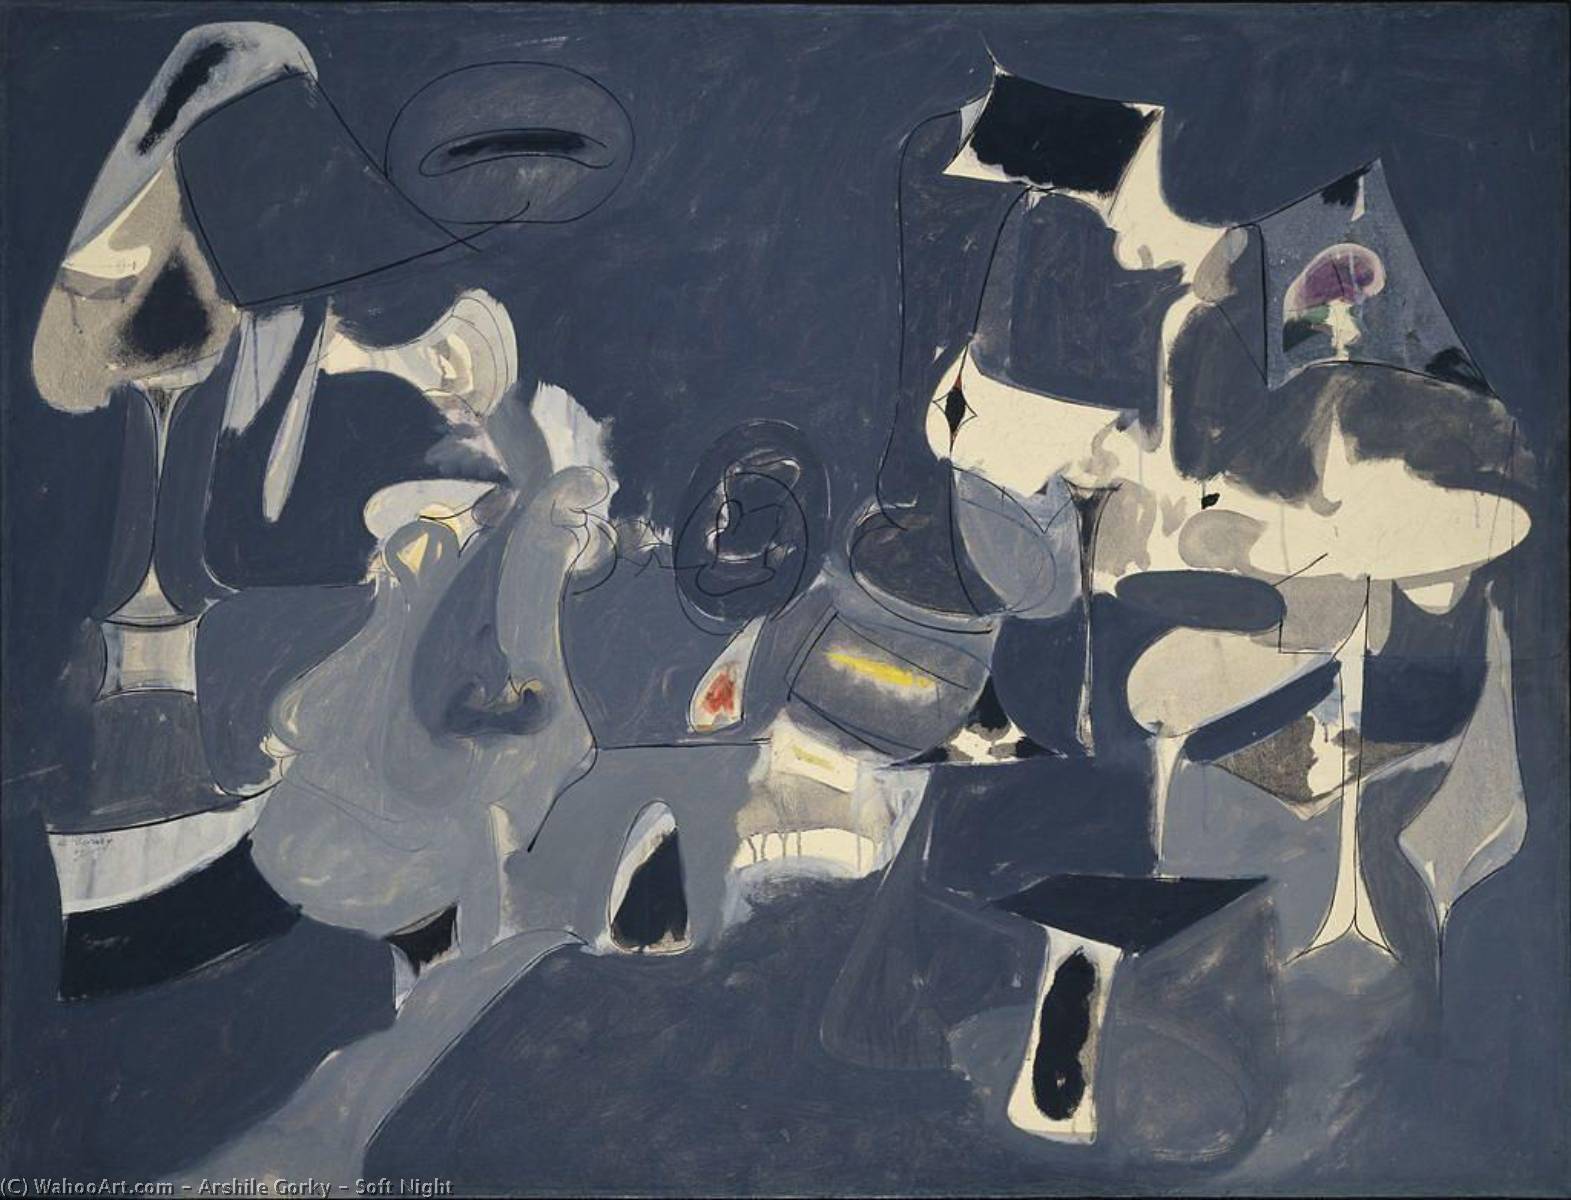 WikiOO.org - Encyclopedia of Fine Arts - Målning, konstverk Arshile Gorky - Soft Night